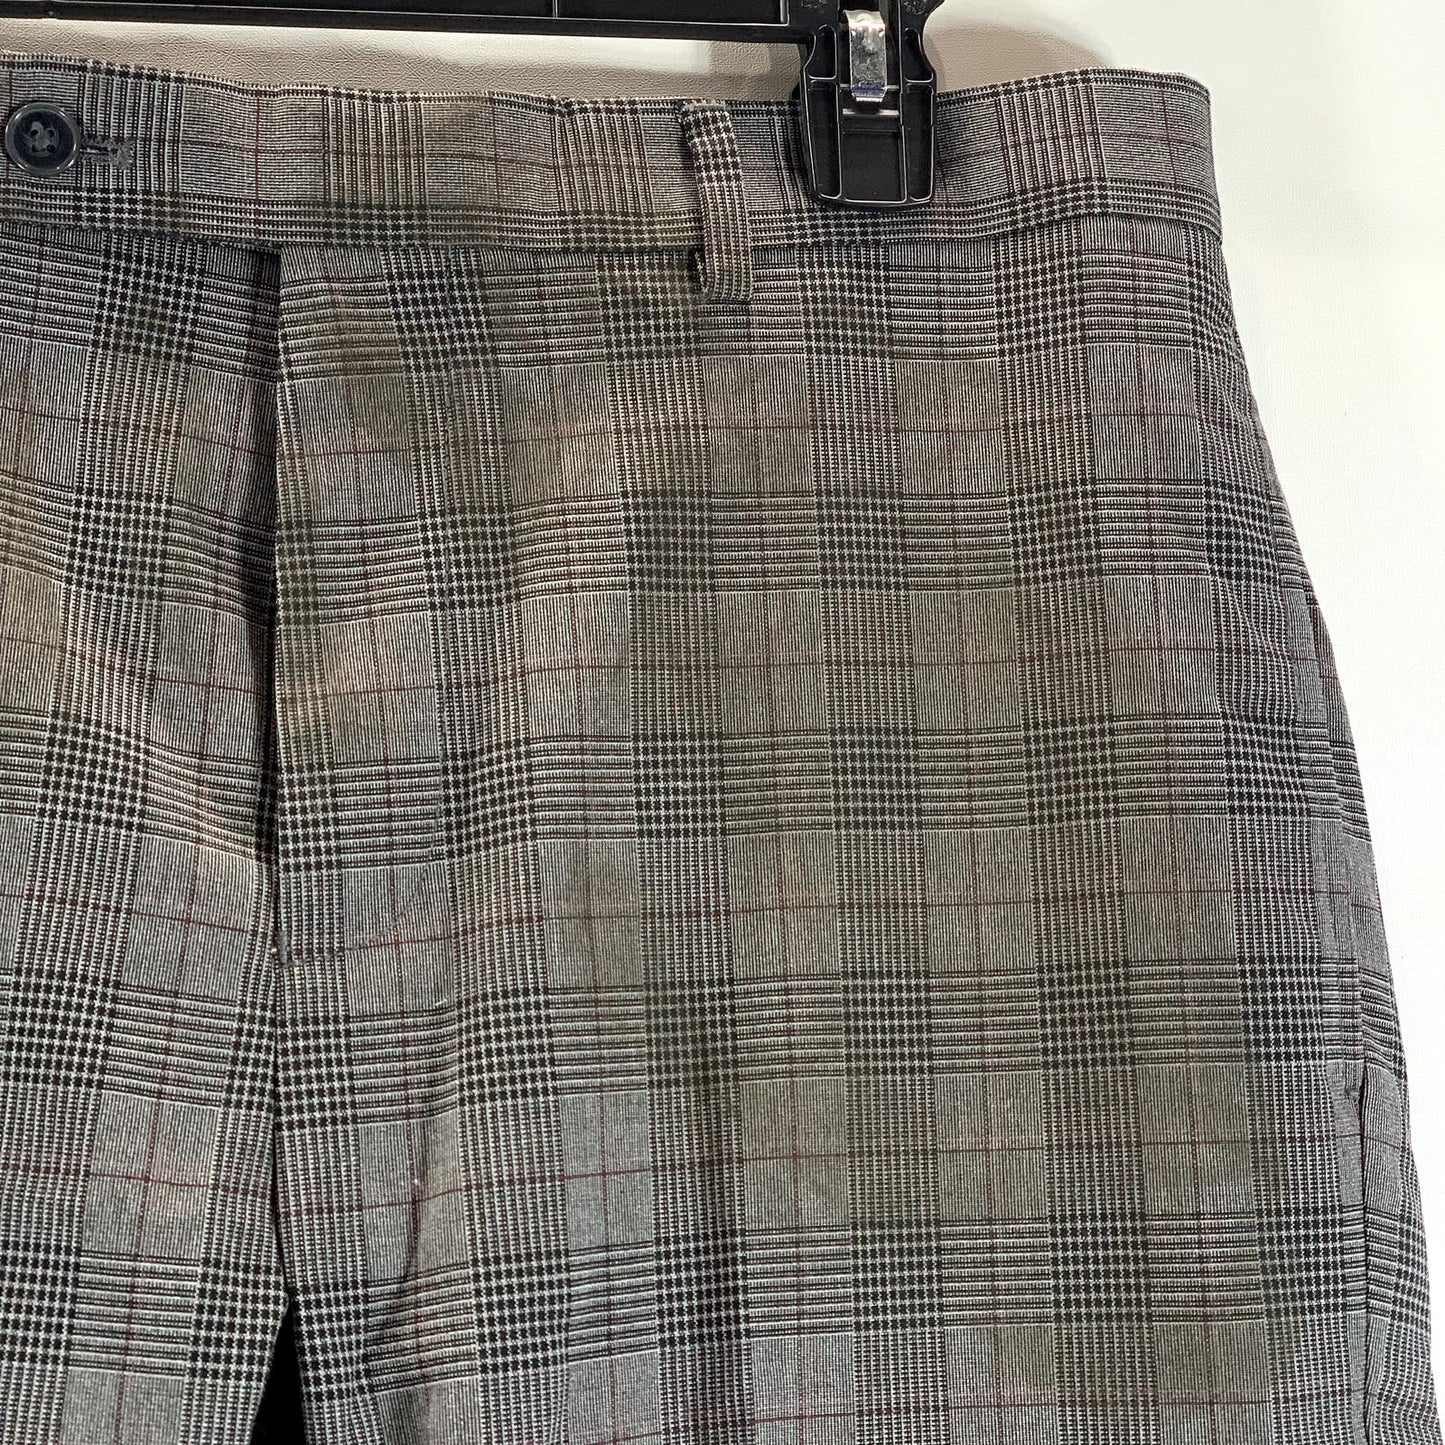 CALVIN KLEIN Men's Charcoal Plaid Slim-Fit Flat Front Dress Pants SZ 33X30